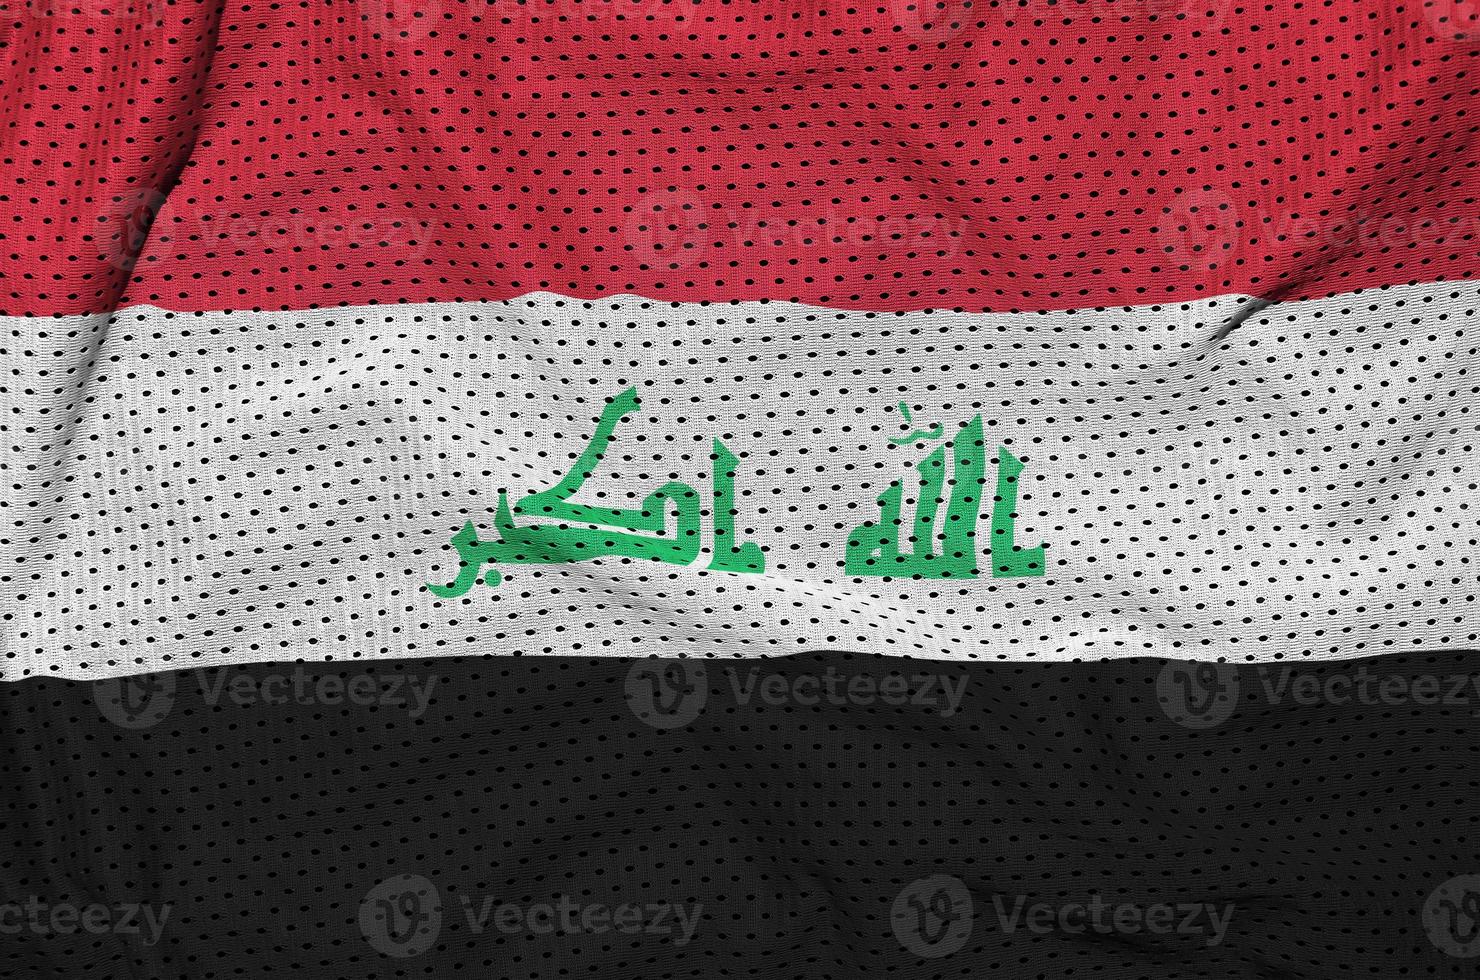 Irak-Flagge gedruckt auf einem Polyester-Nylon-Sportswear-Mesh-Gewebe mit Wi foto